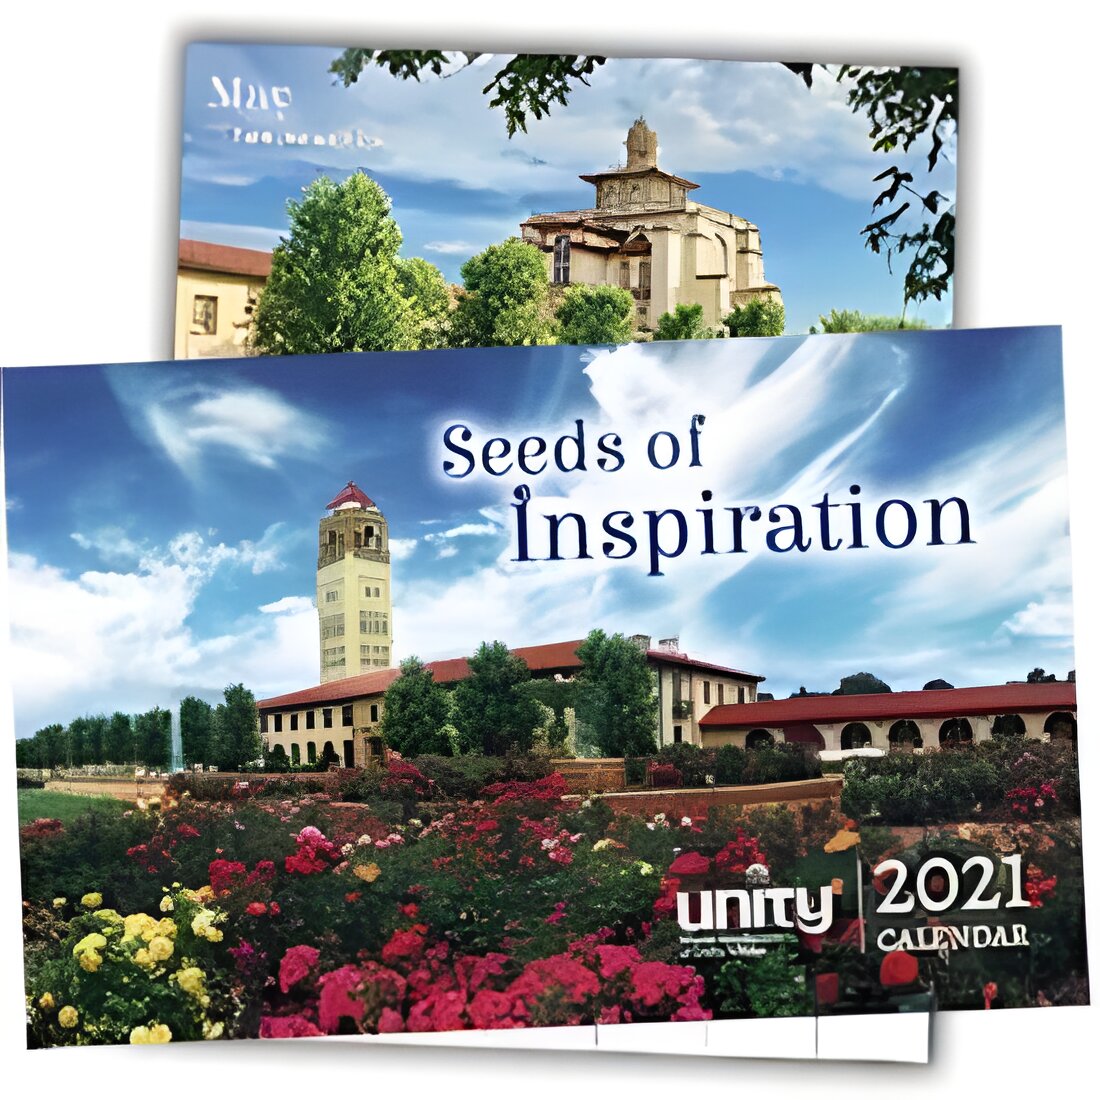 Free 2021 Unity Calendar: Seeds of Inspiration